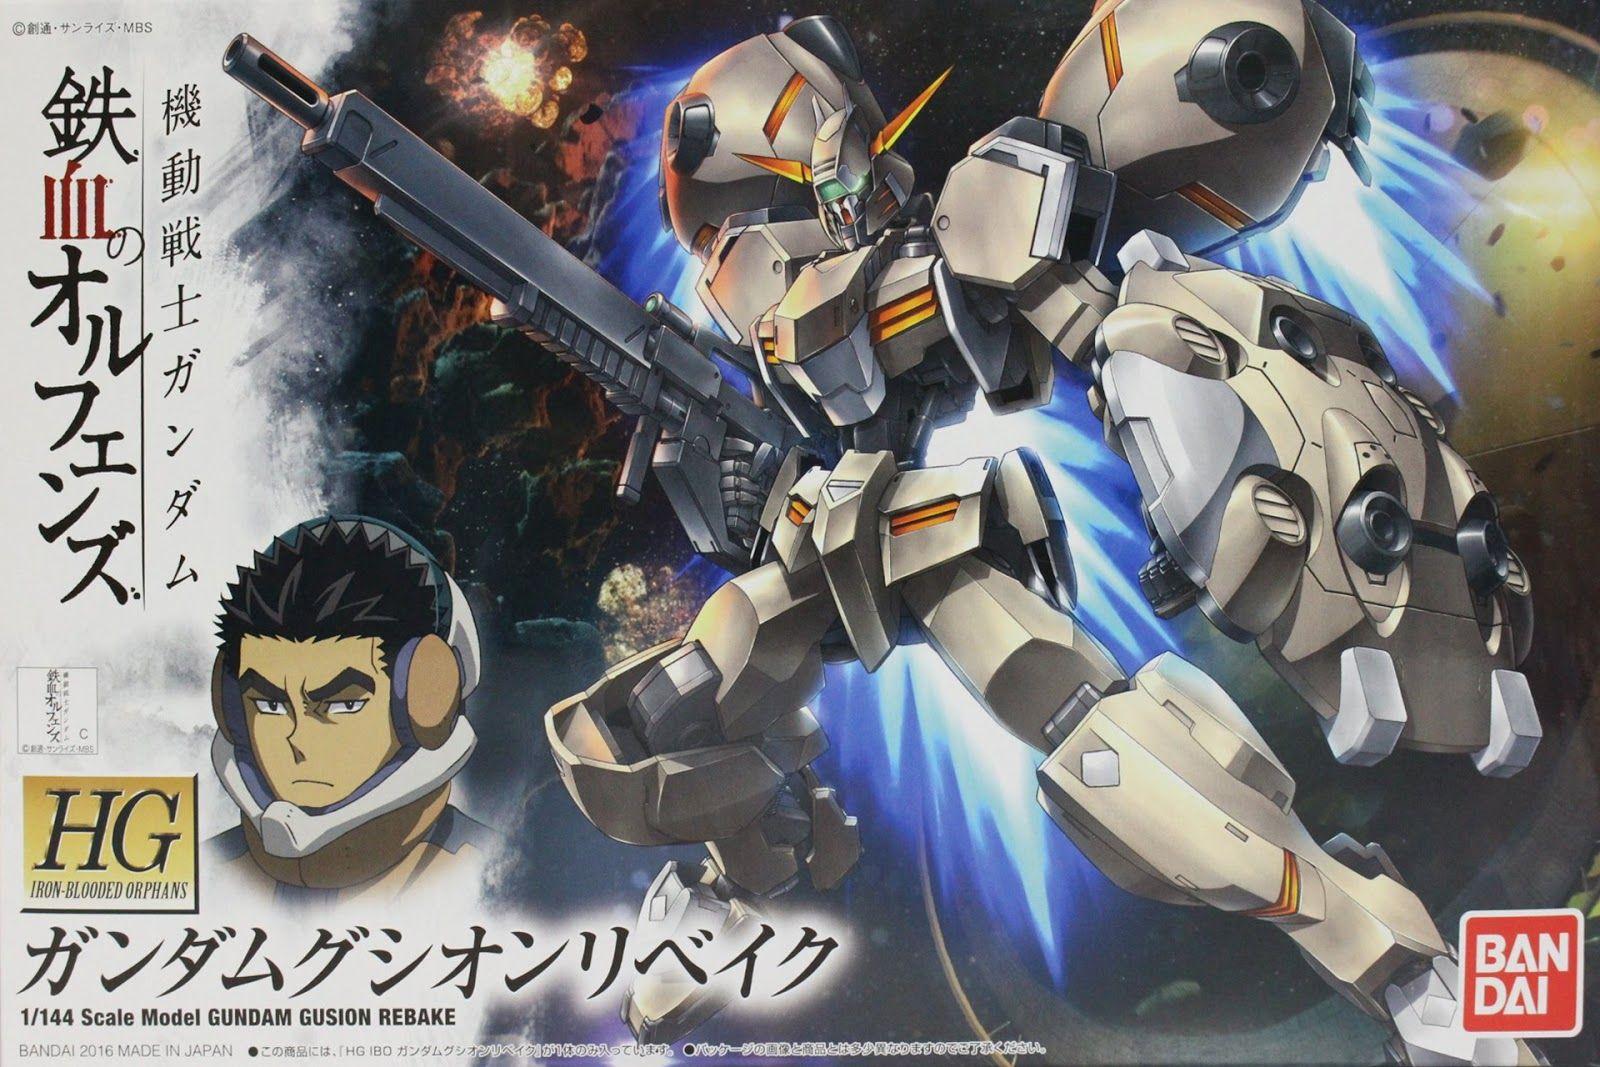 HG 1 144 Gundam Gusion Rebake Info, Box Art And Official